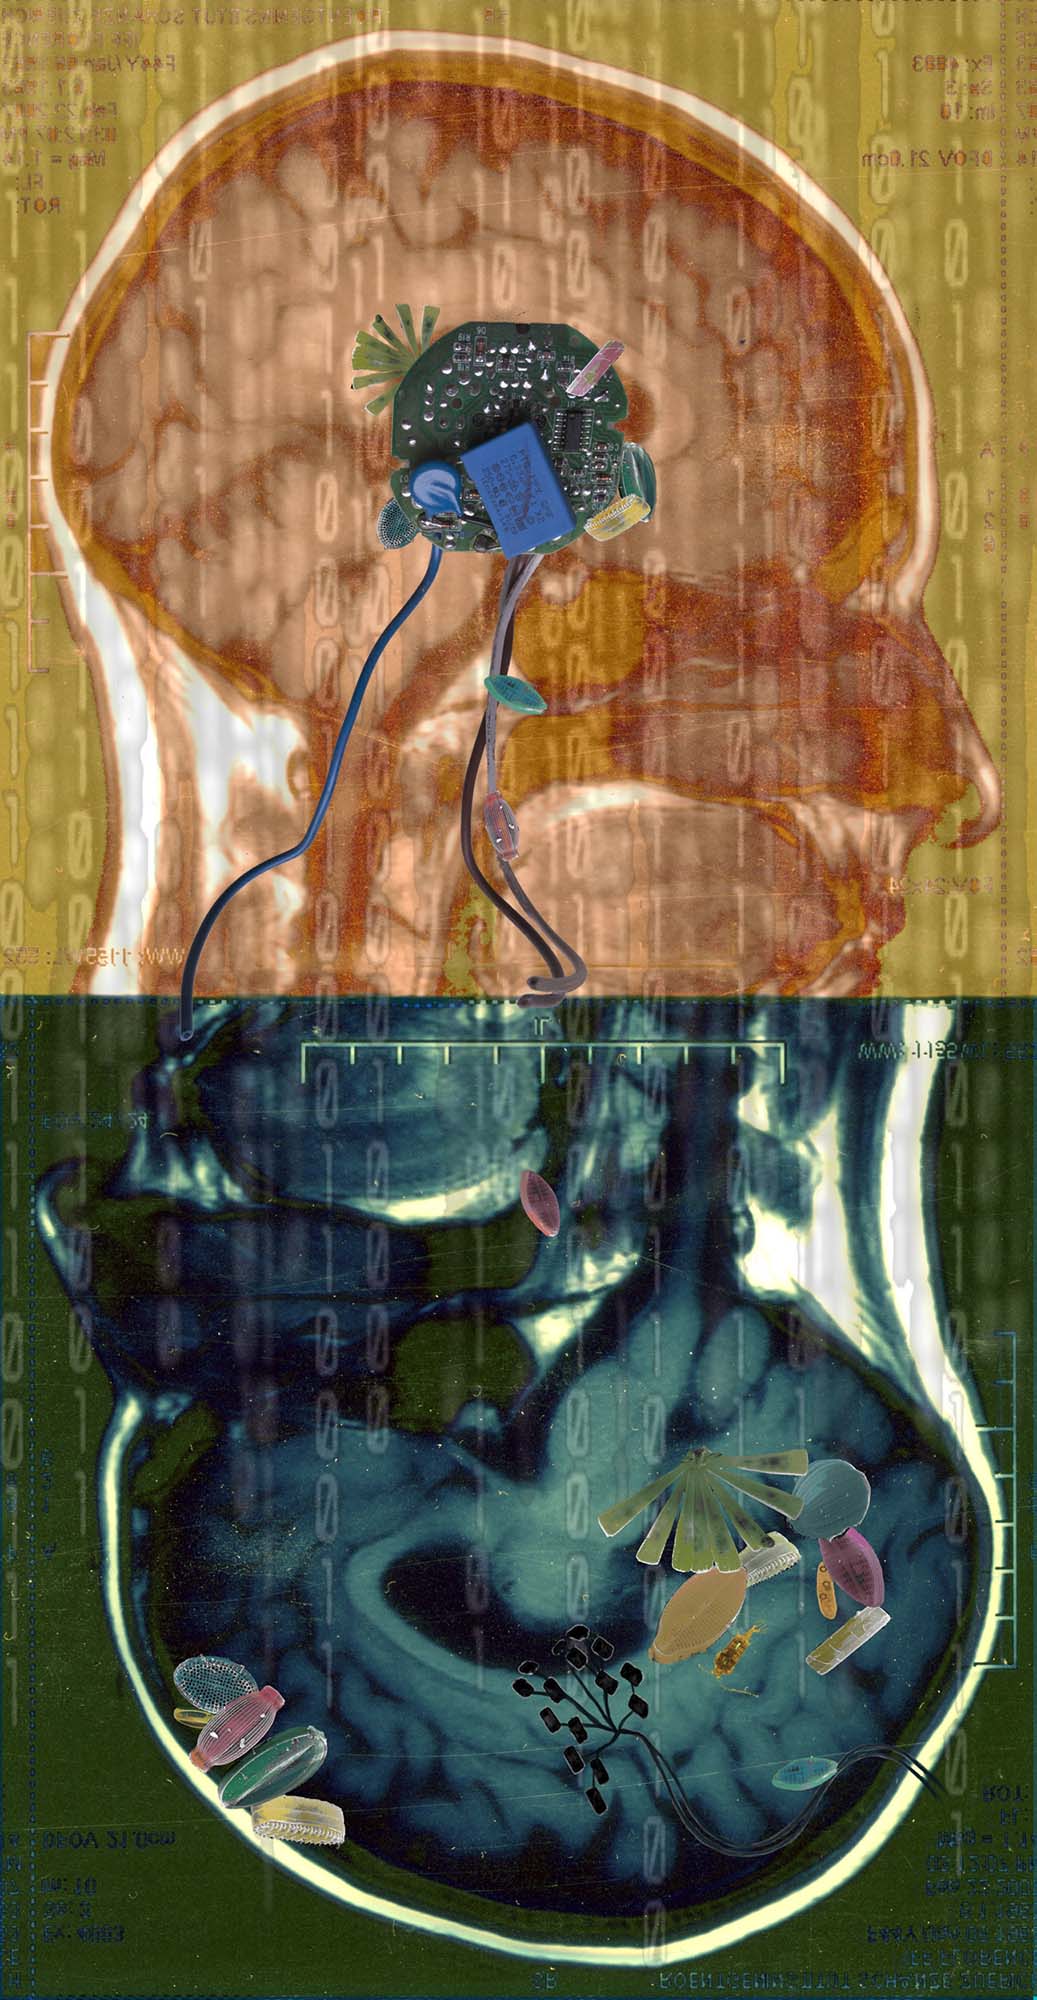 Florence Iff, Amalgamated Fragmentation/Plastisphere–Body 1, digital photograph/collage, 2018, 31x16”